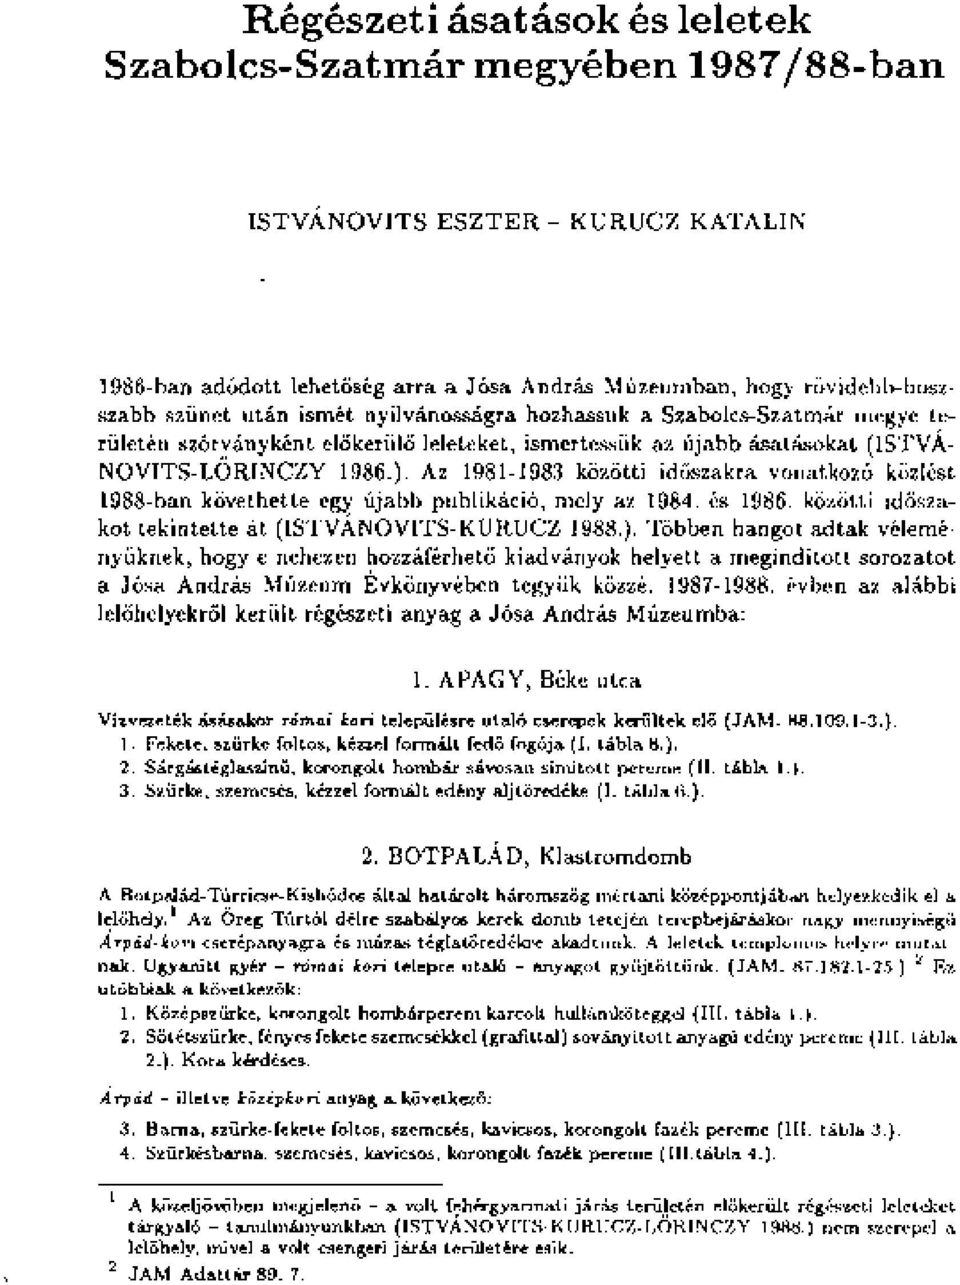 Az 1981-1983 közötti időszakra vonatkozó közlést 1988-ban követhette egy újabb publikáció, mely az 1984. és 1986. közötti időszakot tekintette át (ISTVÁNOVITS-KURUCZ 1988.).